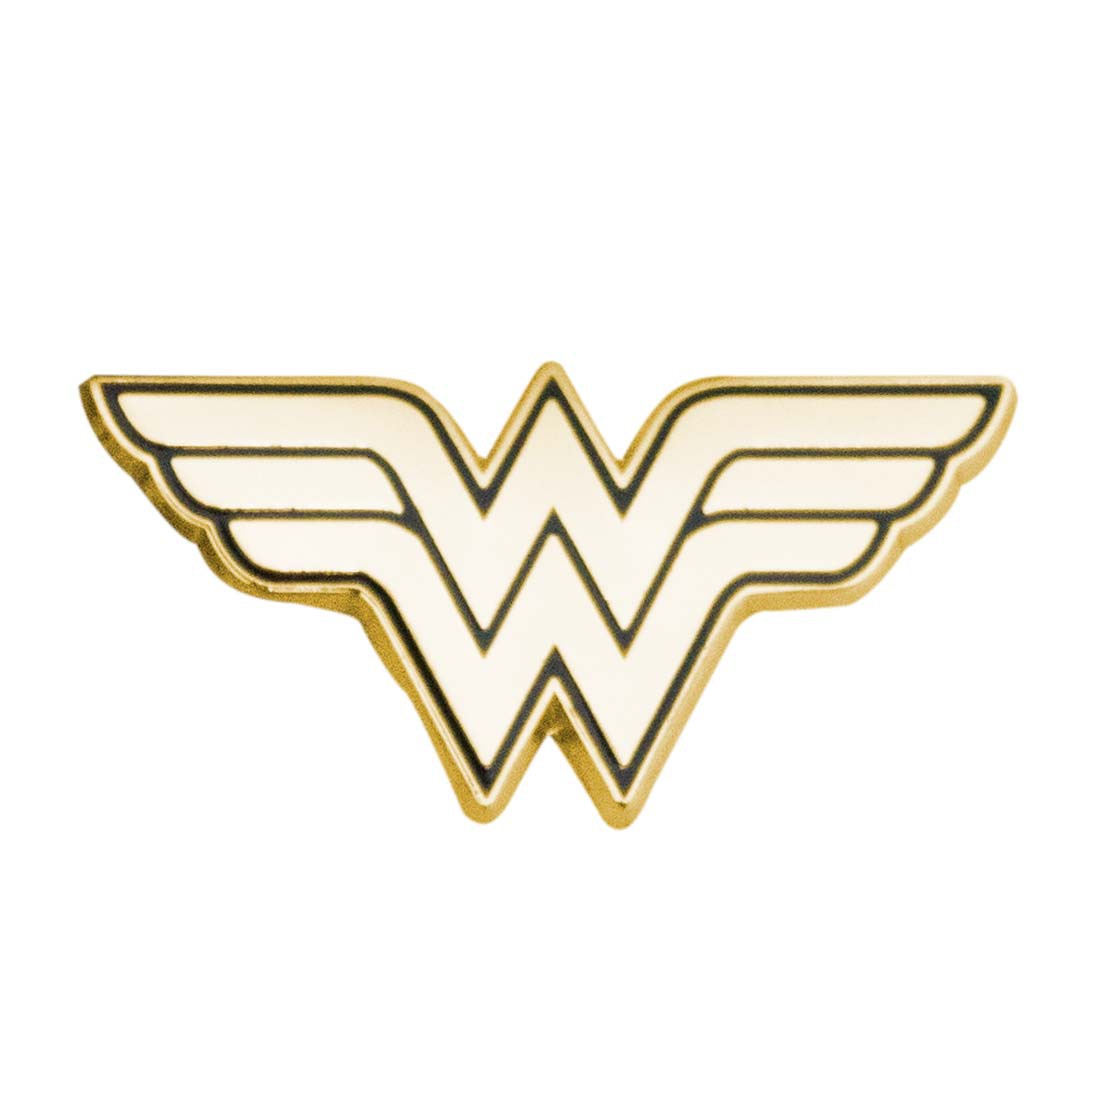 Wonder Woman Gold Lapel Pin